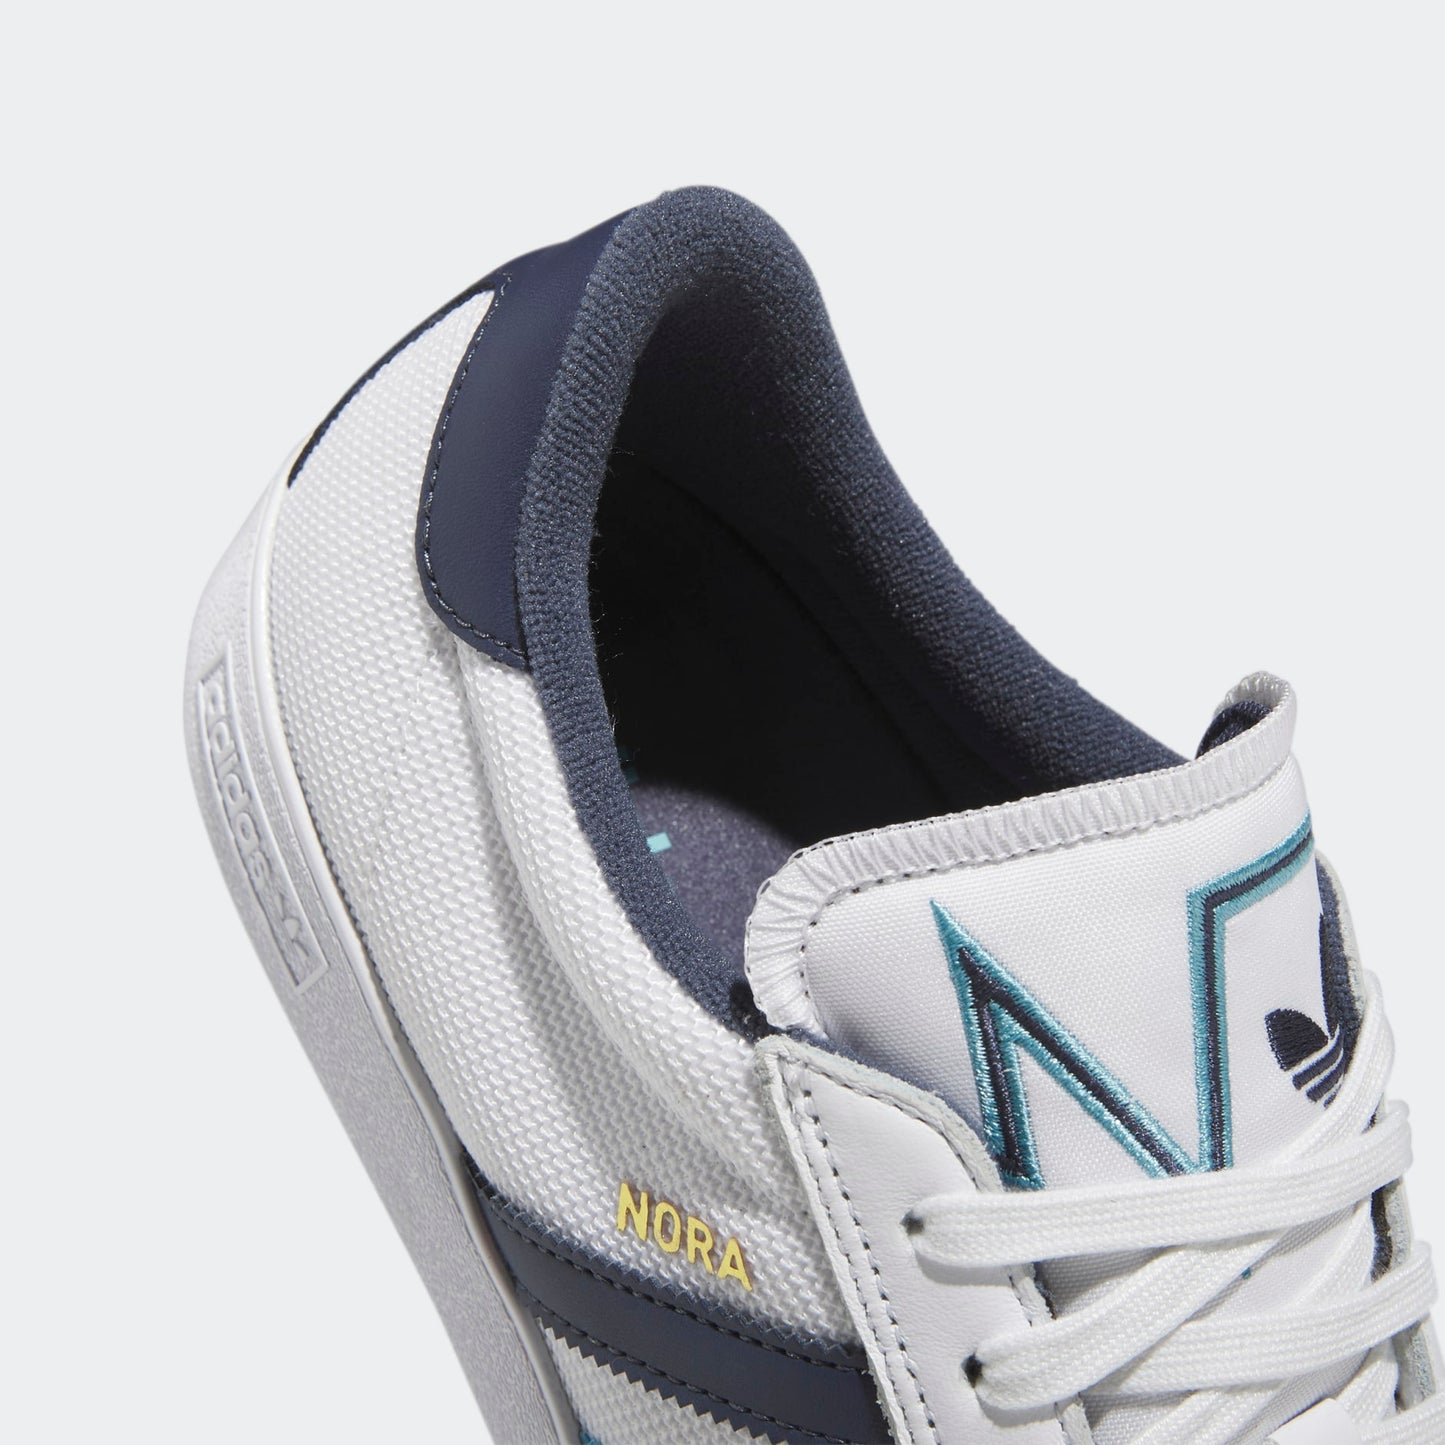 Adidas Nora - White Blue Shadow Navy